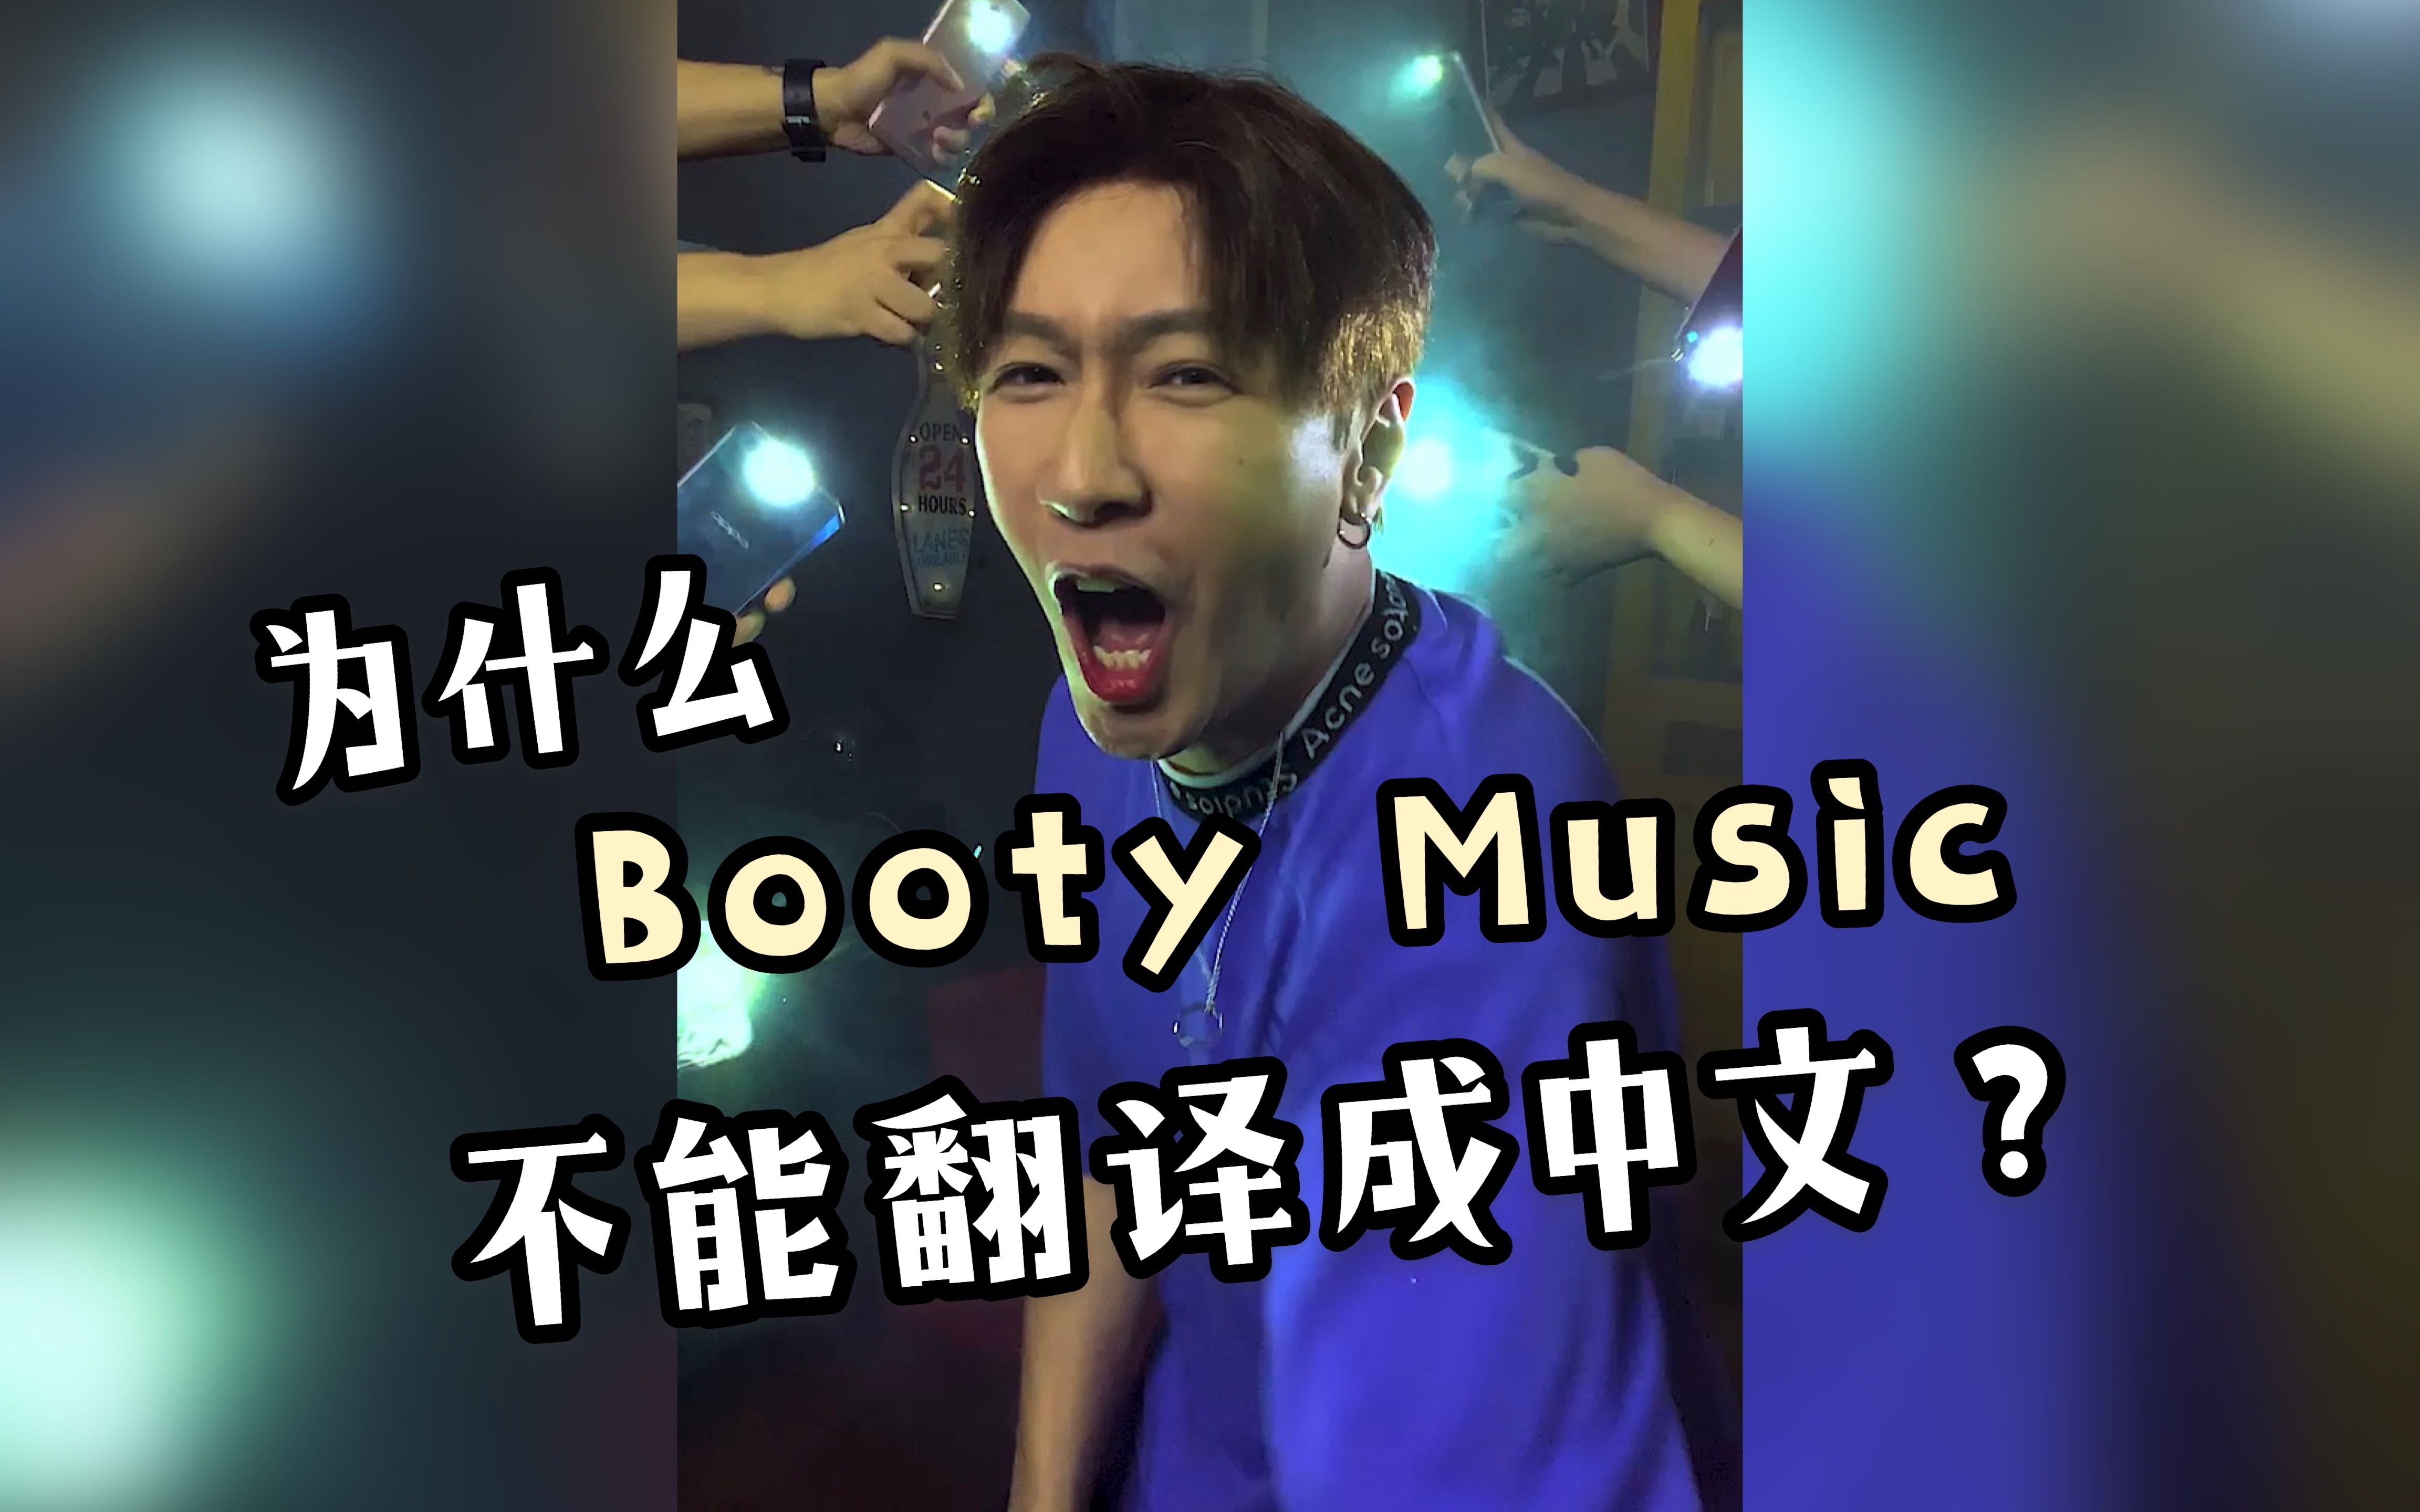 当把Booty Music直接翻译成中文唱时....